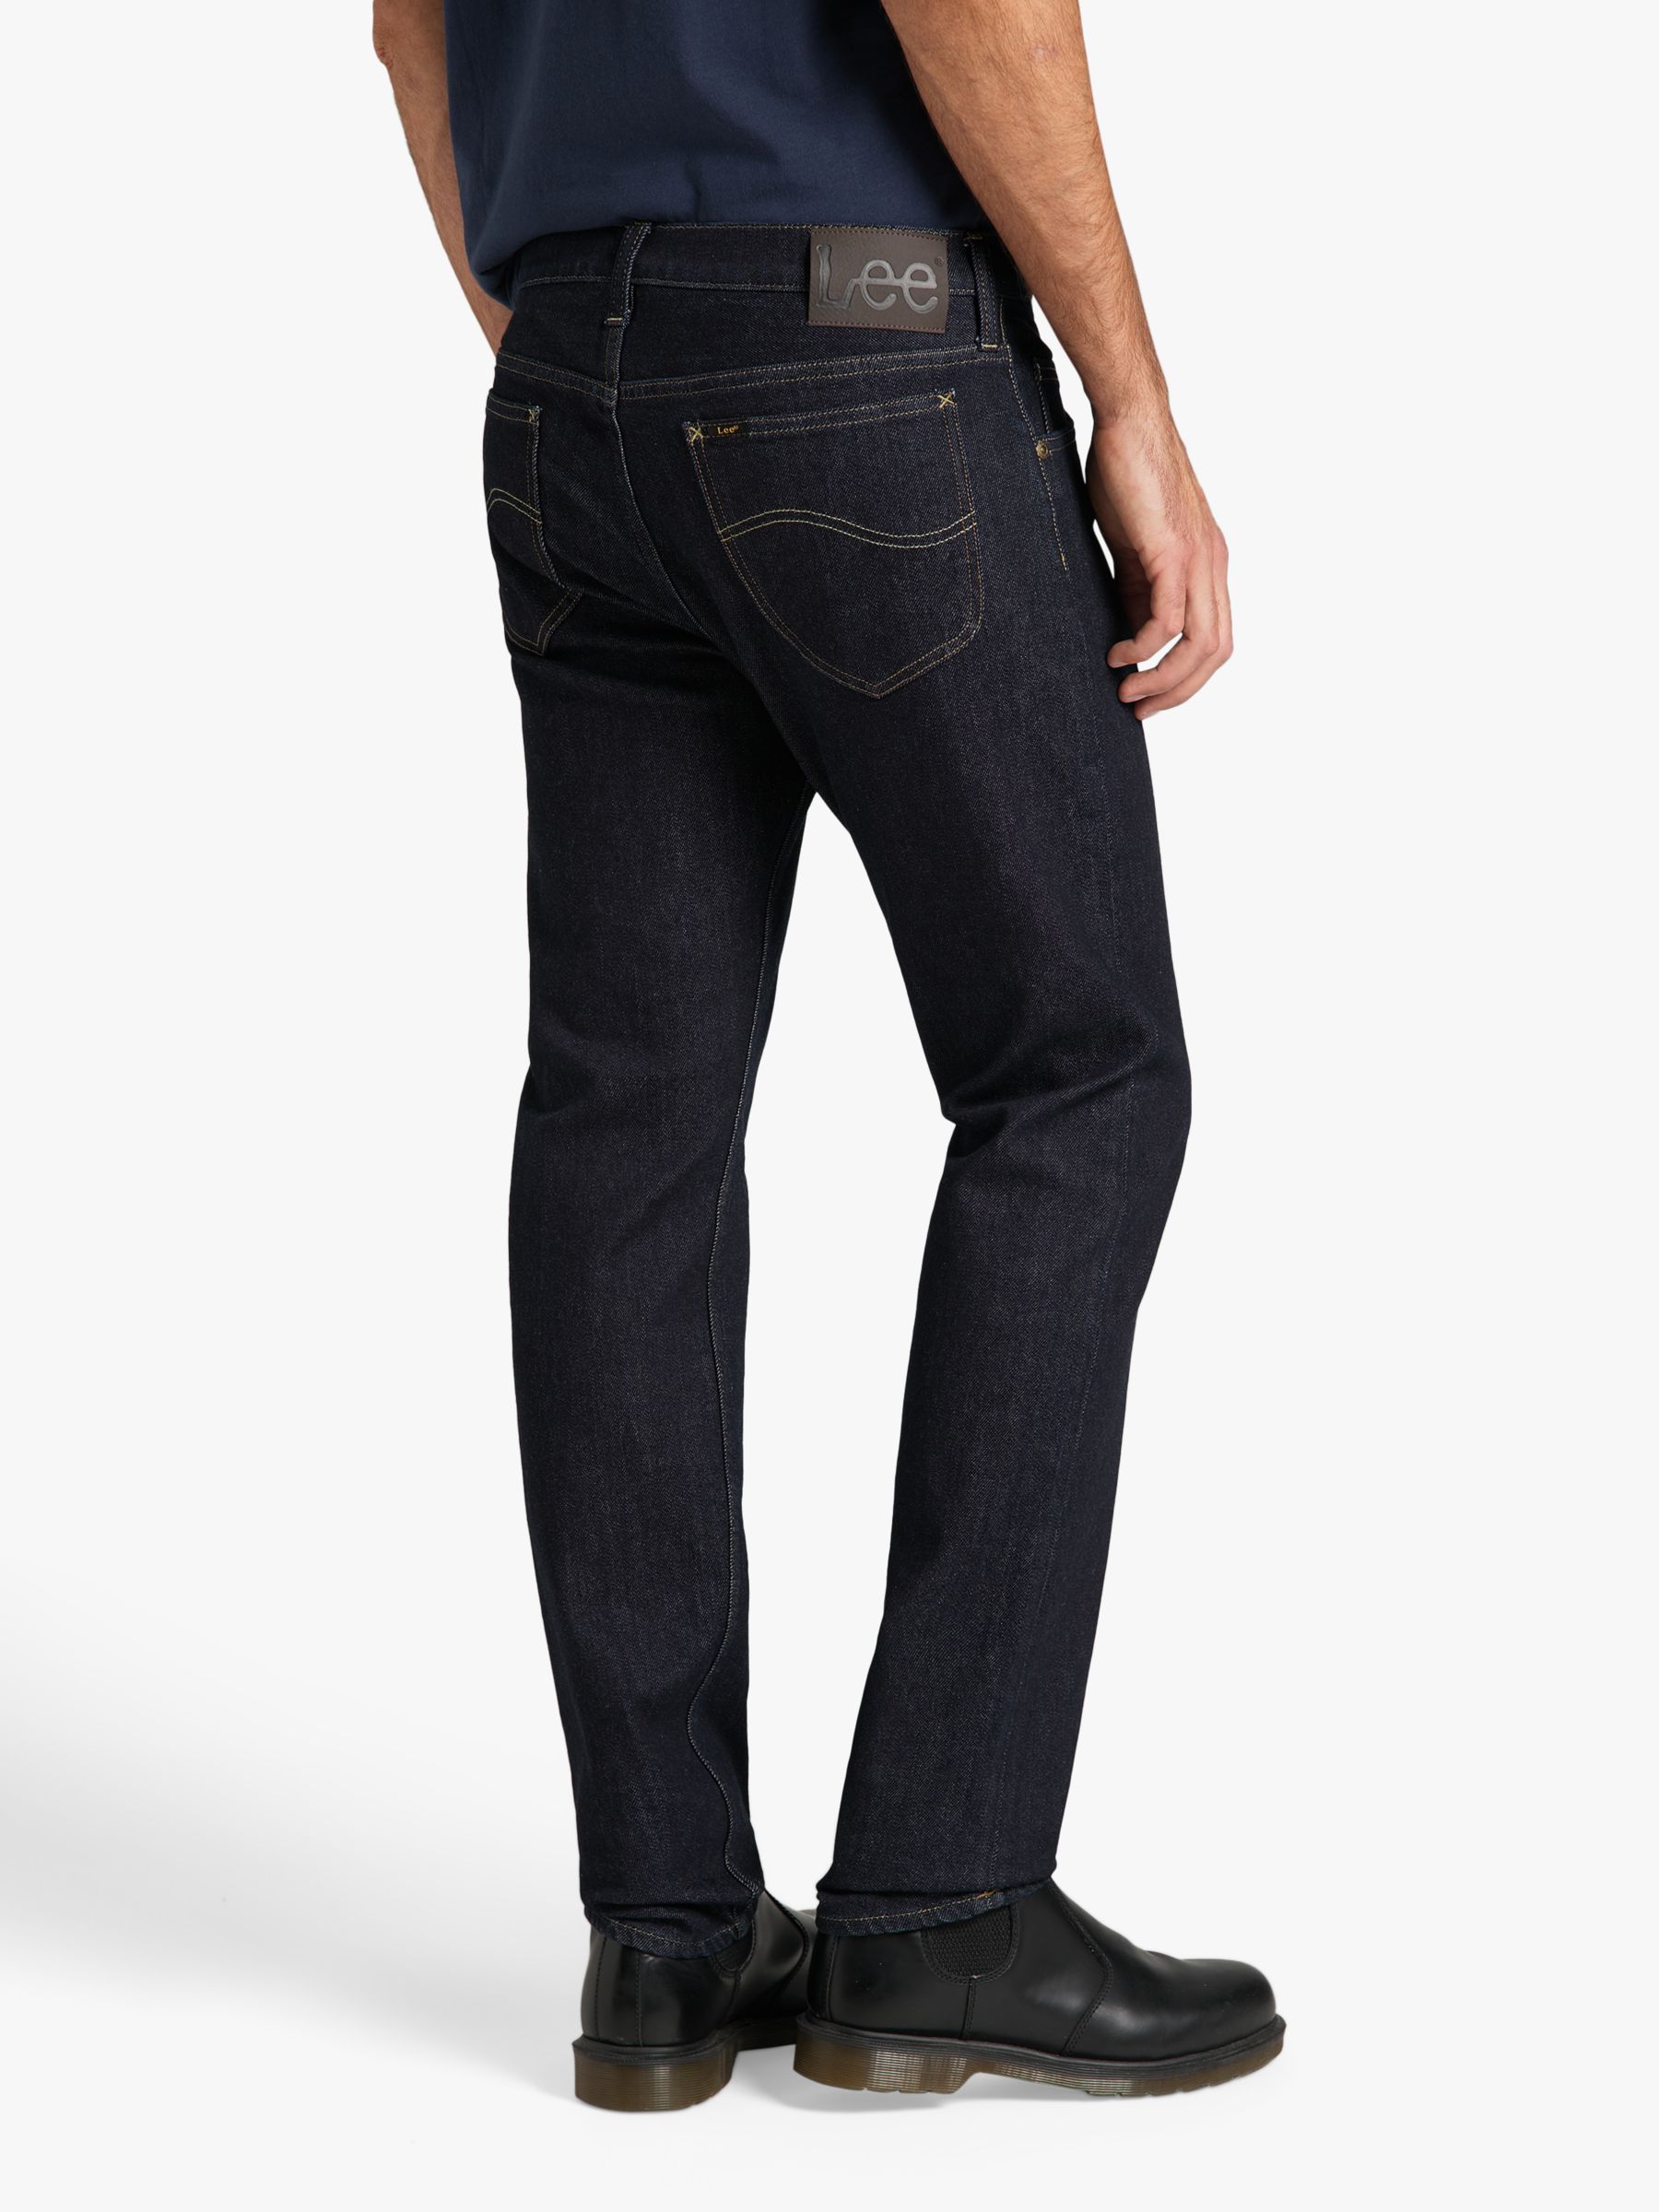 evenwichtig slank ader Lee Rider Slim Fit Denim Jeans, Blue at John Lewis & Partners